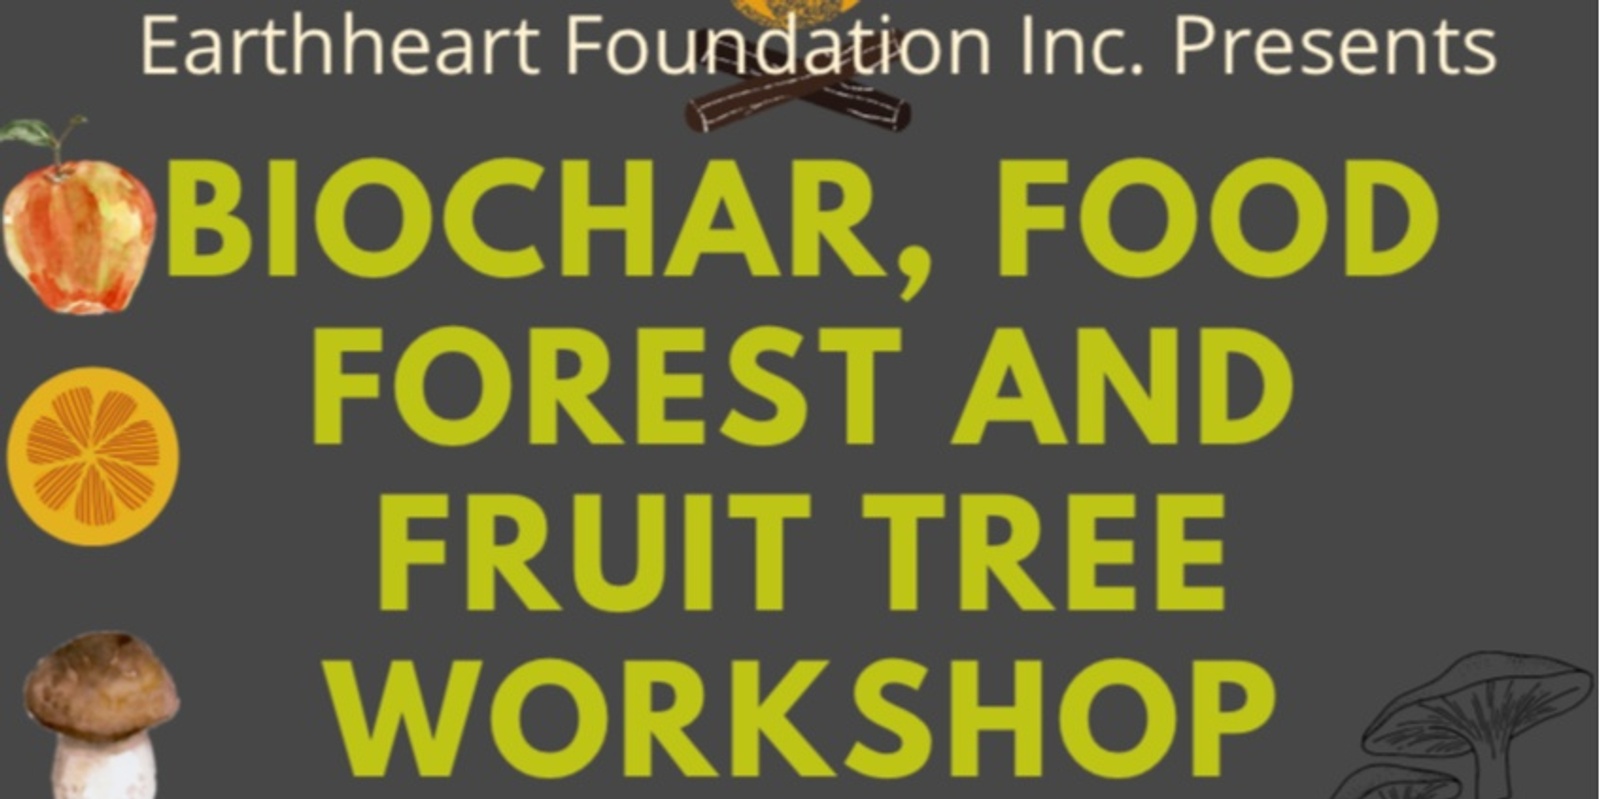 Banner image for BioChar, Food Forest and Fruit Tree Workshop